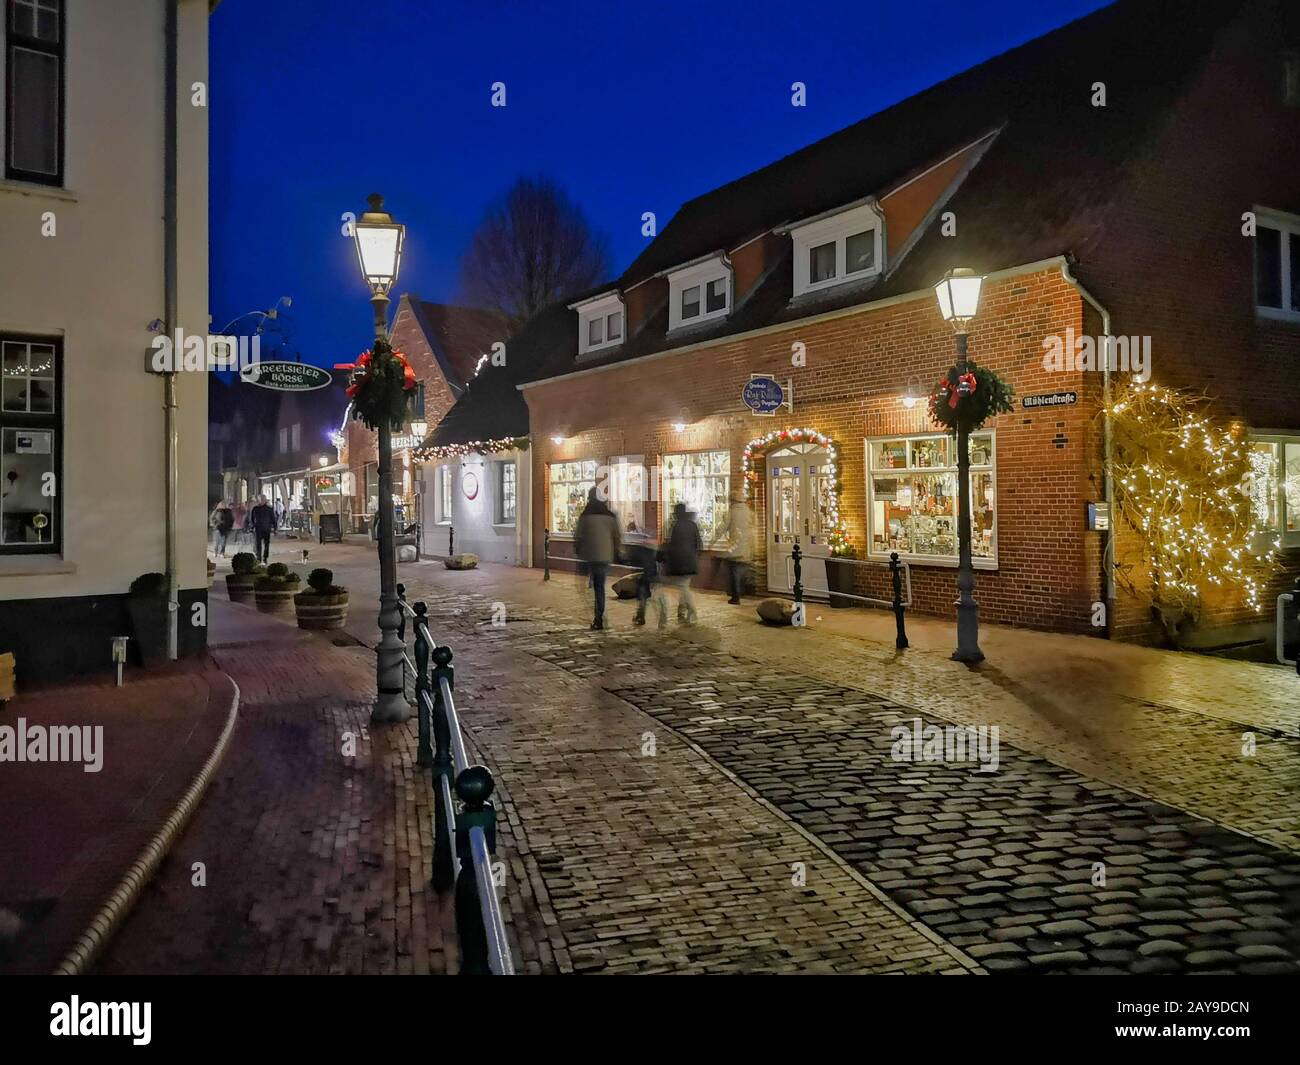 Night Scene. Historic old town and illuminated shop windows. Stock Photo